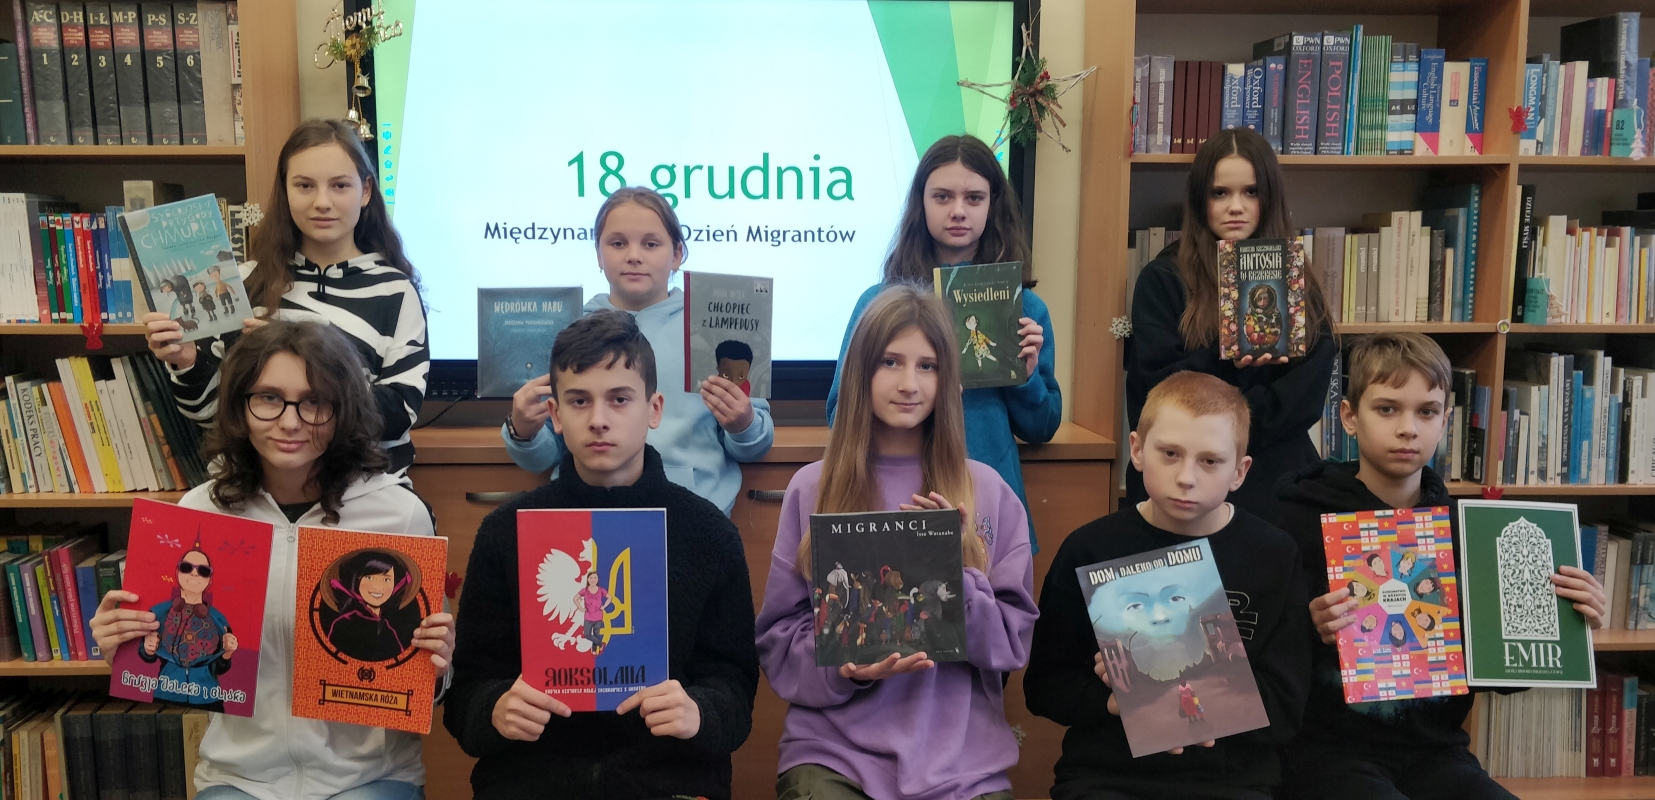 miniatura - uczniowie prezentujący książki z okazji Międzynarodowego Dnia Migrantów..jpg